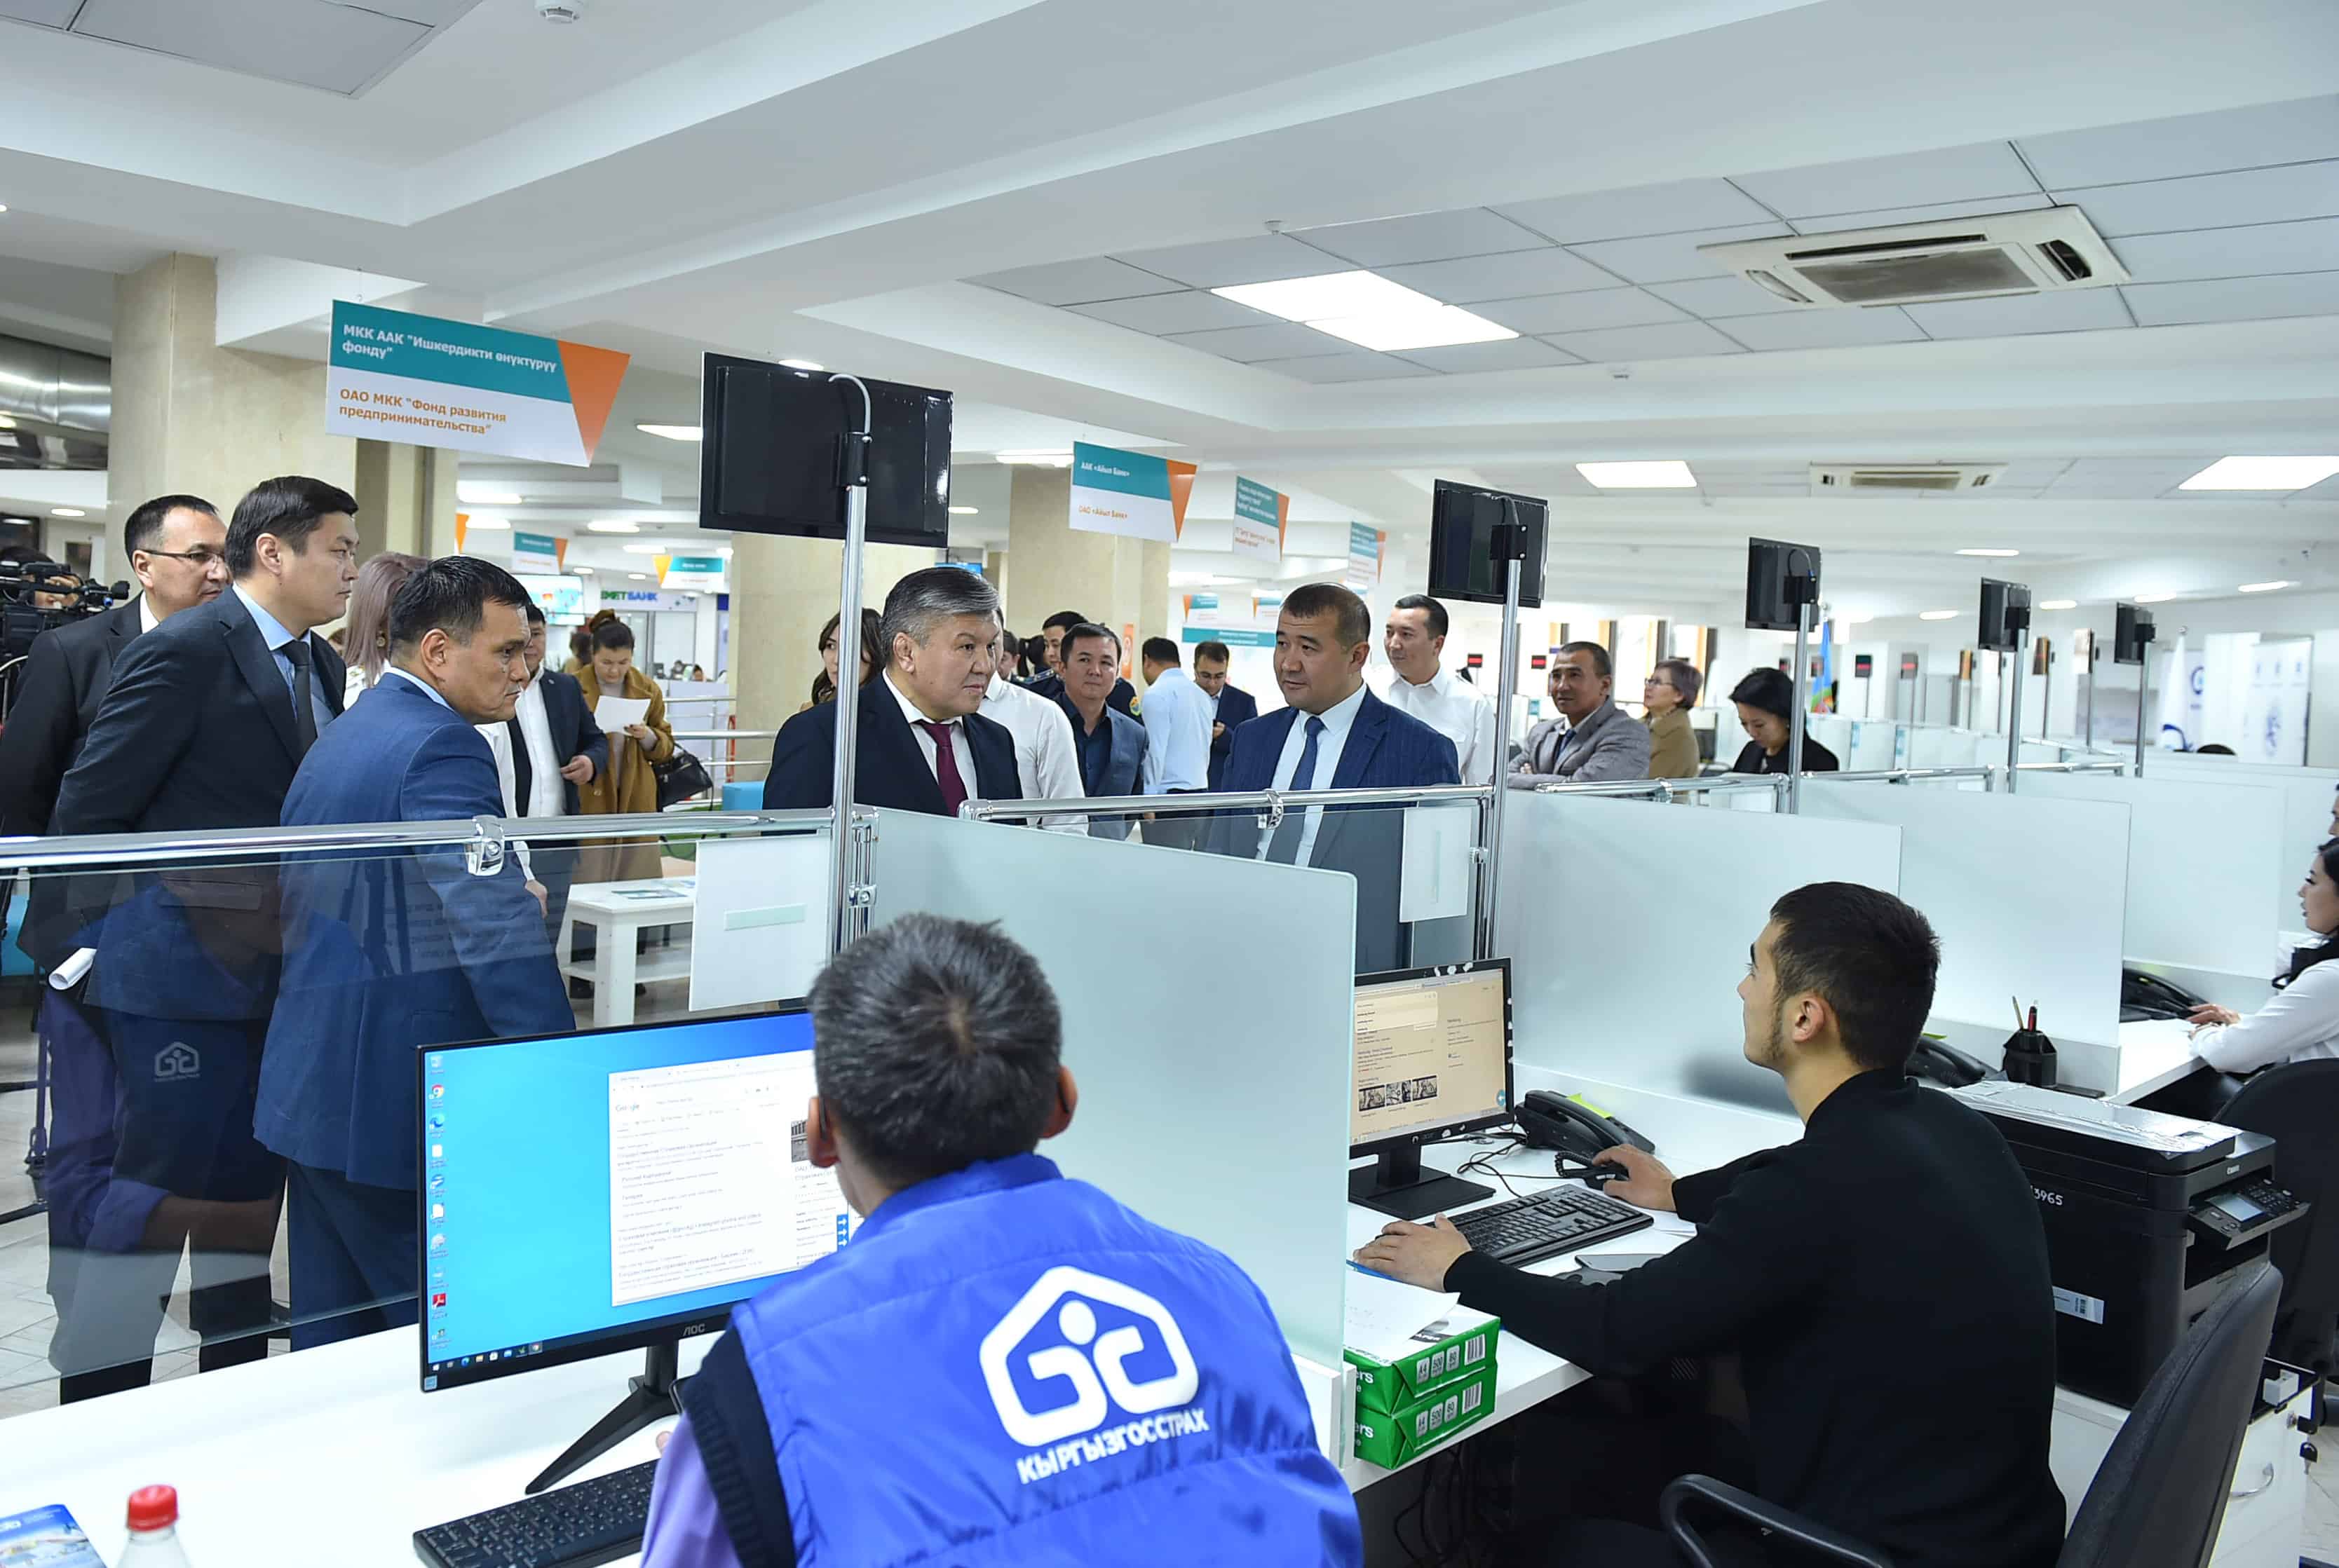 В Бишкеке открылся Центр обслуживания предпринимателей — какие услуги будет оказывать